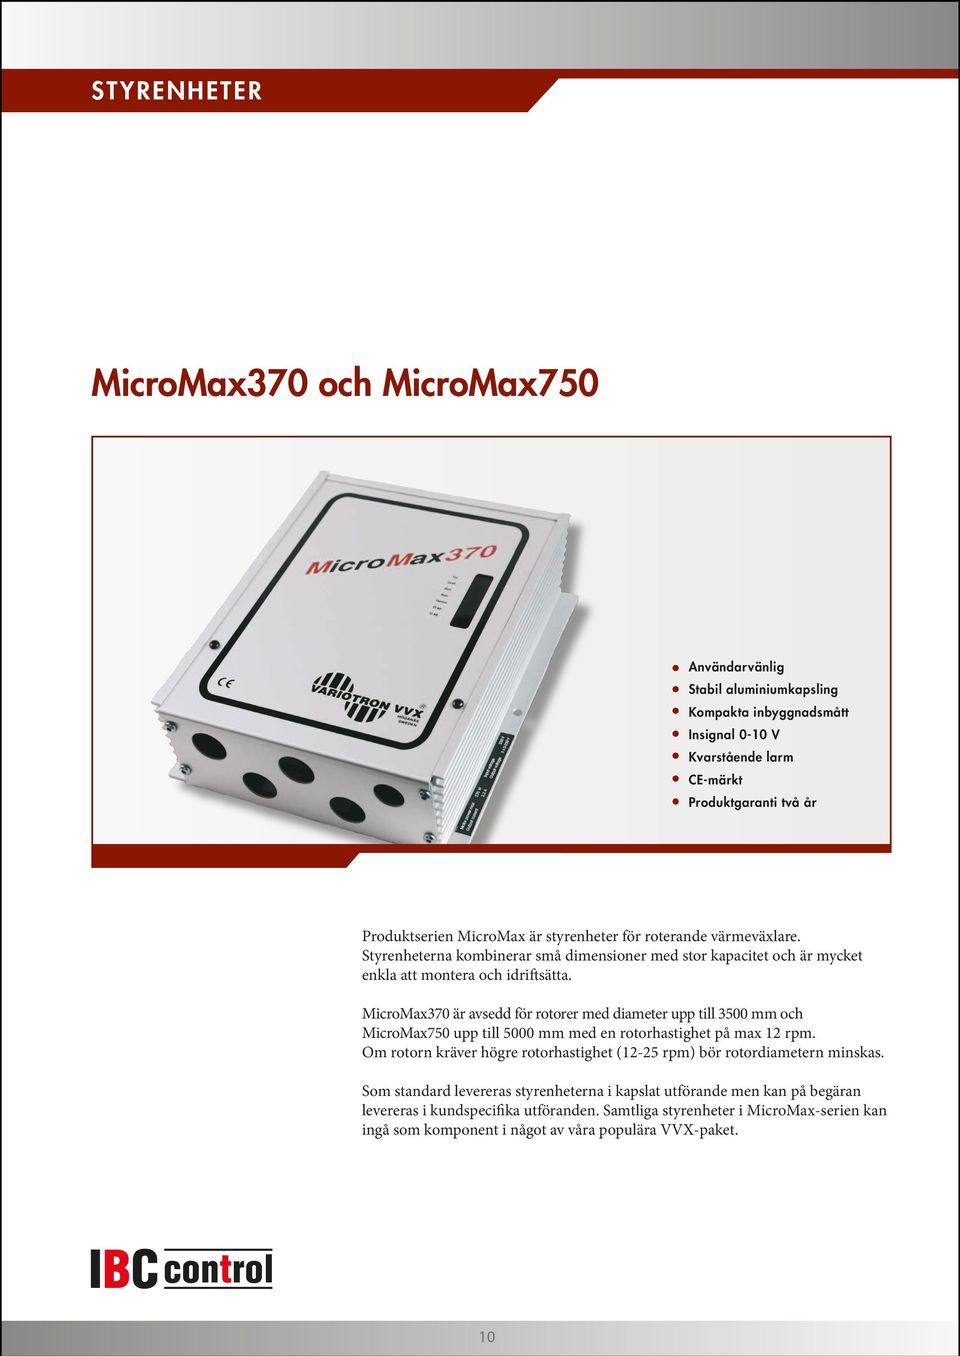 MicroMax370 är avsedd för rotorer med diameter upp till 3500 mm och MicroMax0 upp till 5000 mm med en rotorhastighet på max 12 rpm.